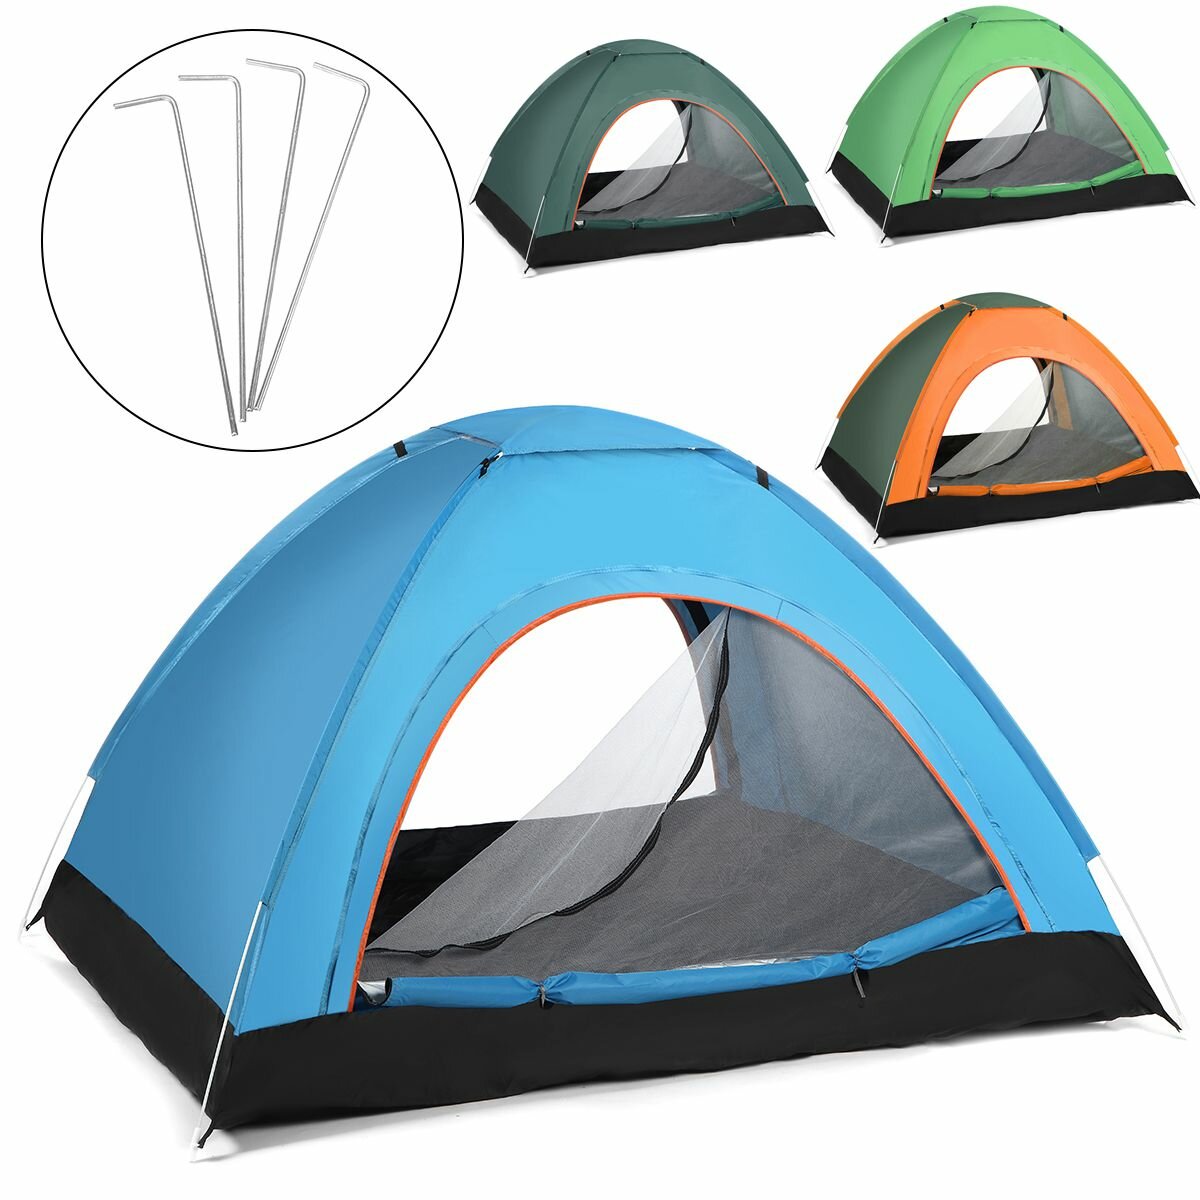 Tente de camping automatique anti-UV, résistante au vent et à l'eau pour 2-3 personnes, idéale pour les voyages en plein air, la randonnée et la plage.